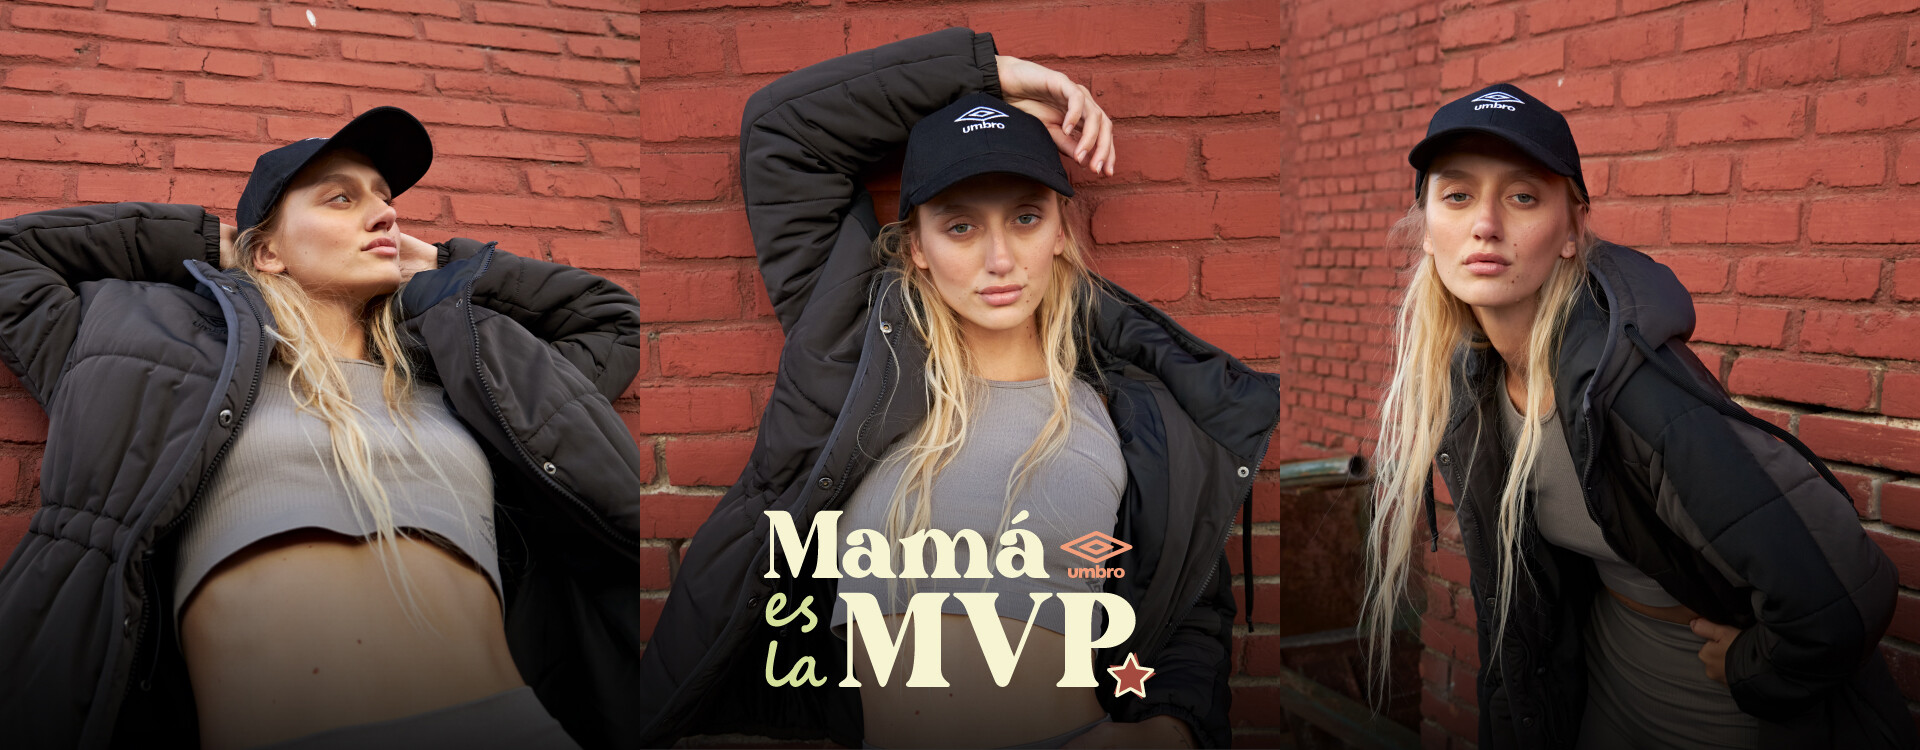 Mamá es la MVP